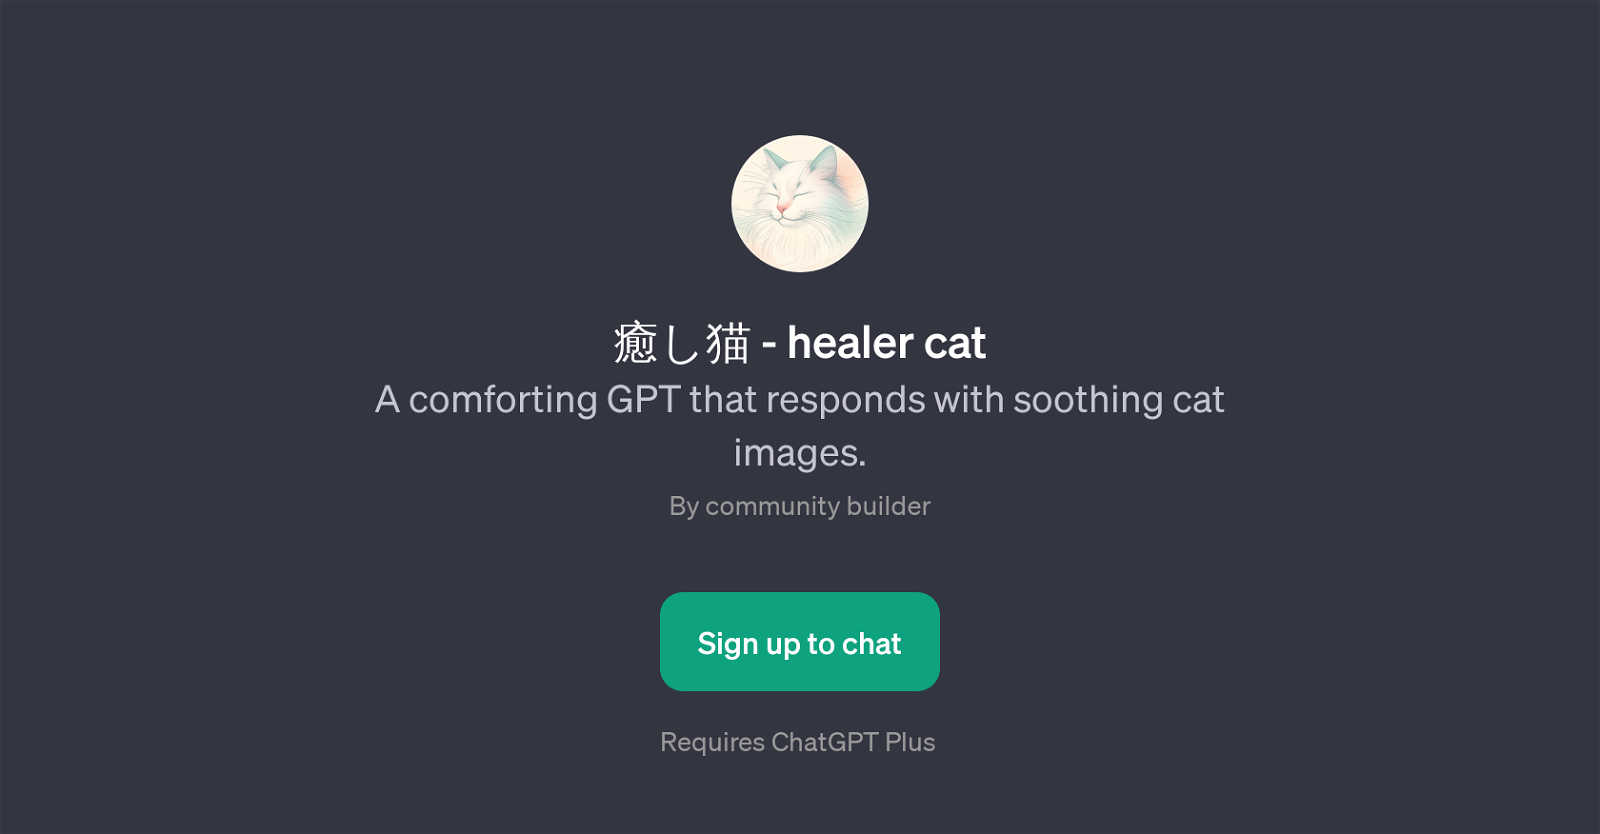 - Healer Cat website